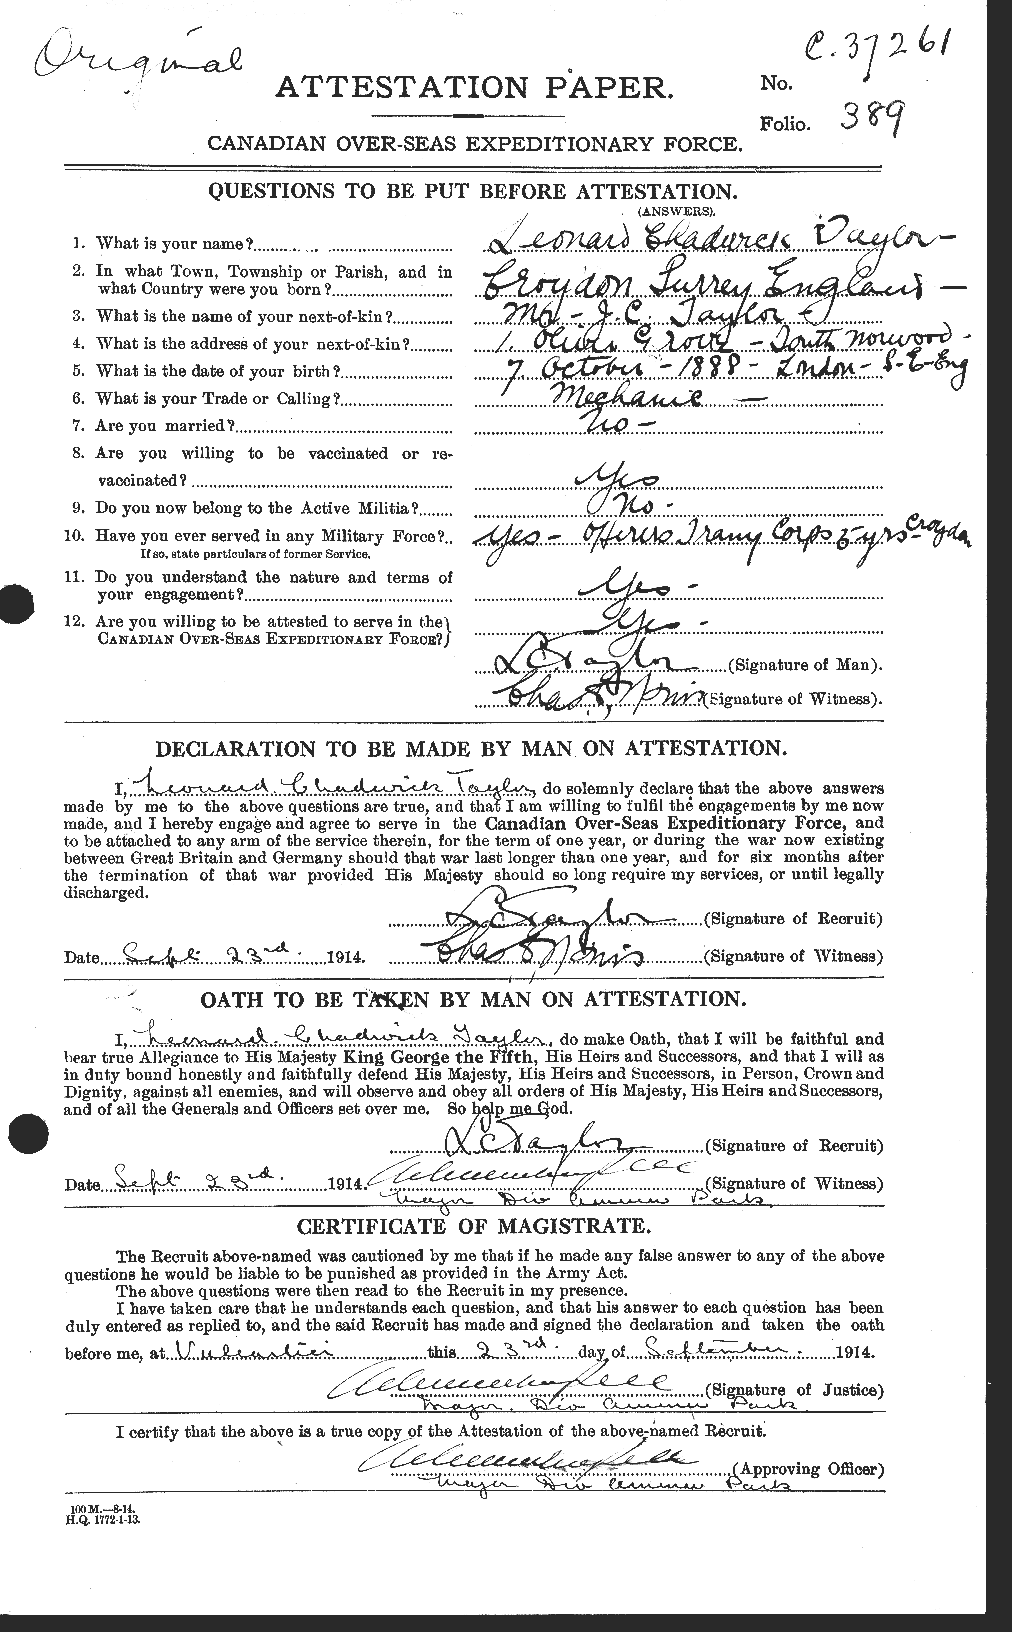 Dossiers du Personnel de la Première Guerre mondiale - CEC 627625a